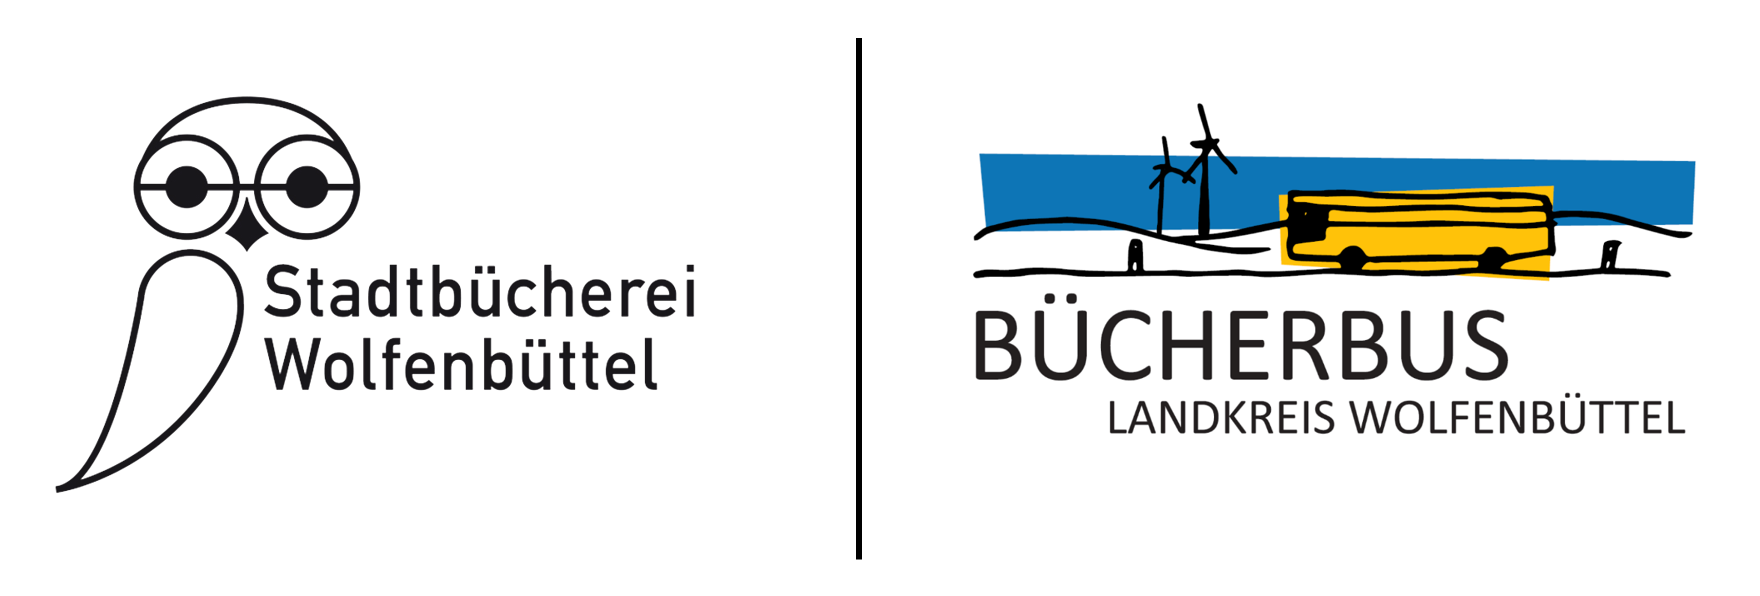 Die beiden Logos der Wolfenbütteler Büchereien: eine Eule mit dem Schriftzug Stadtbücherei Wolfenbüttel, und ein stilisierter Bus mit dem Schriftzug Bücherbus Landkreis Wolfenbüttel